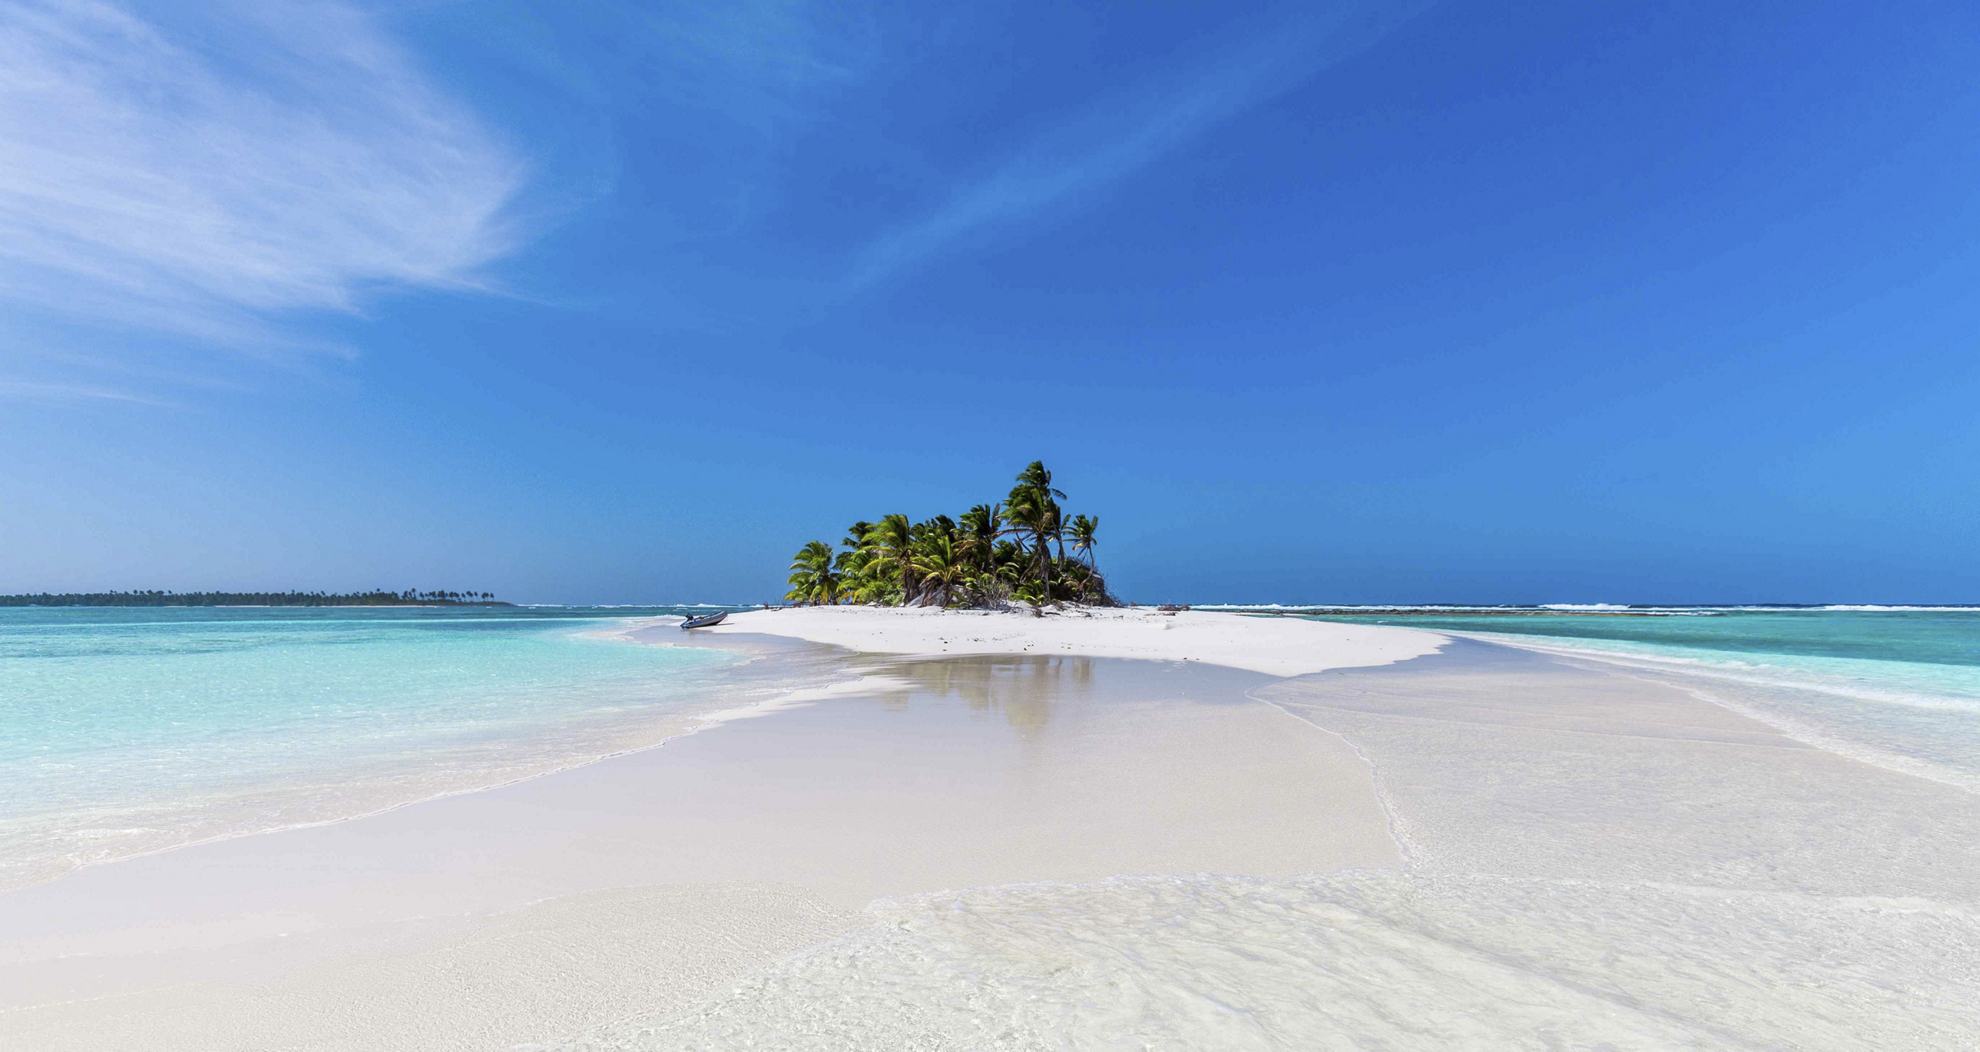 Einsame Inseln mit Palmen von türkisblauem Meer umgeben.